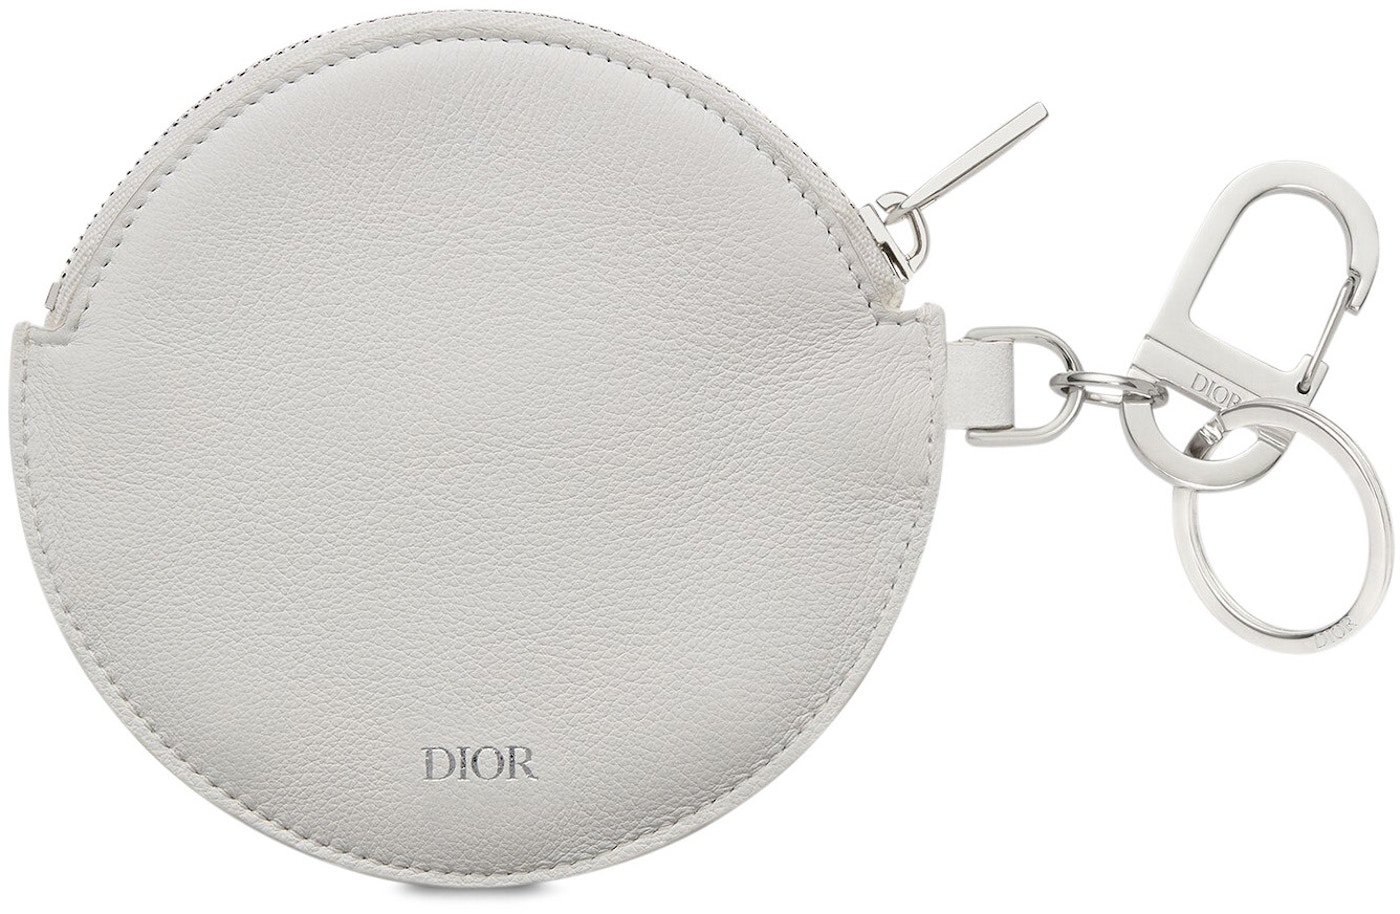 Dior x Daniel Arsham Zip Charm Calfskin White in Smooth Calfskin with